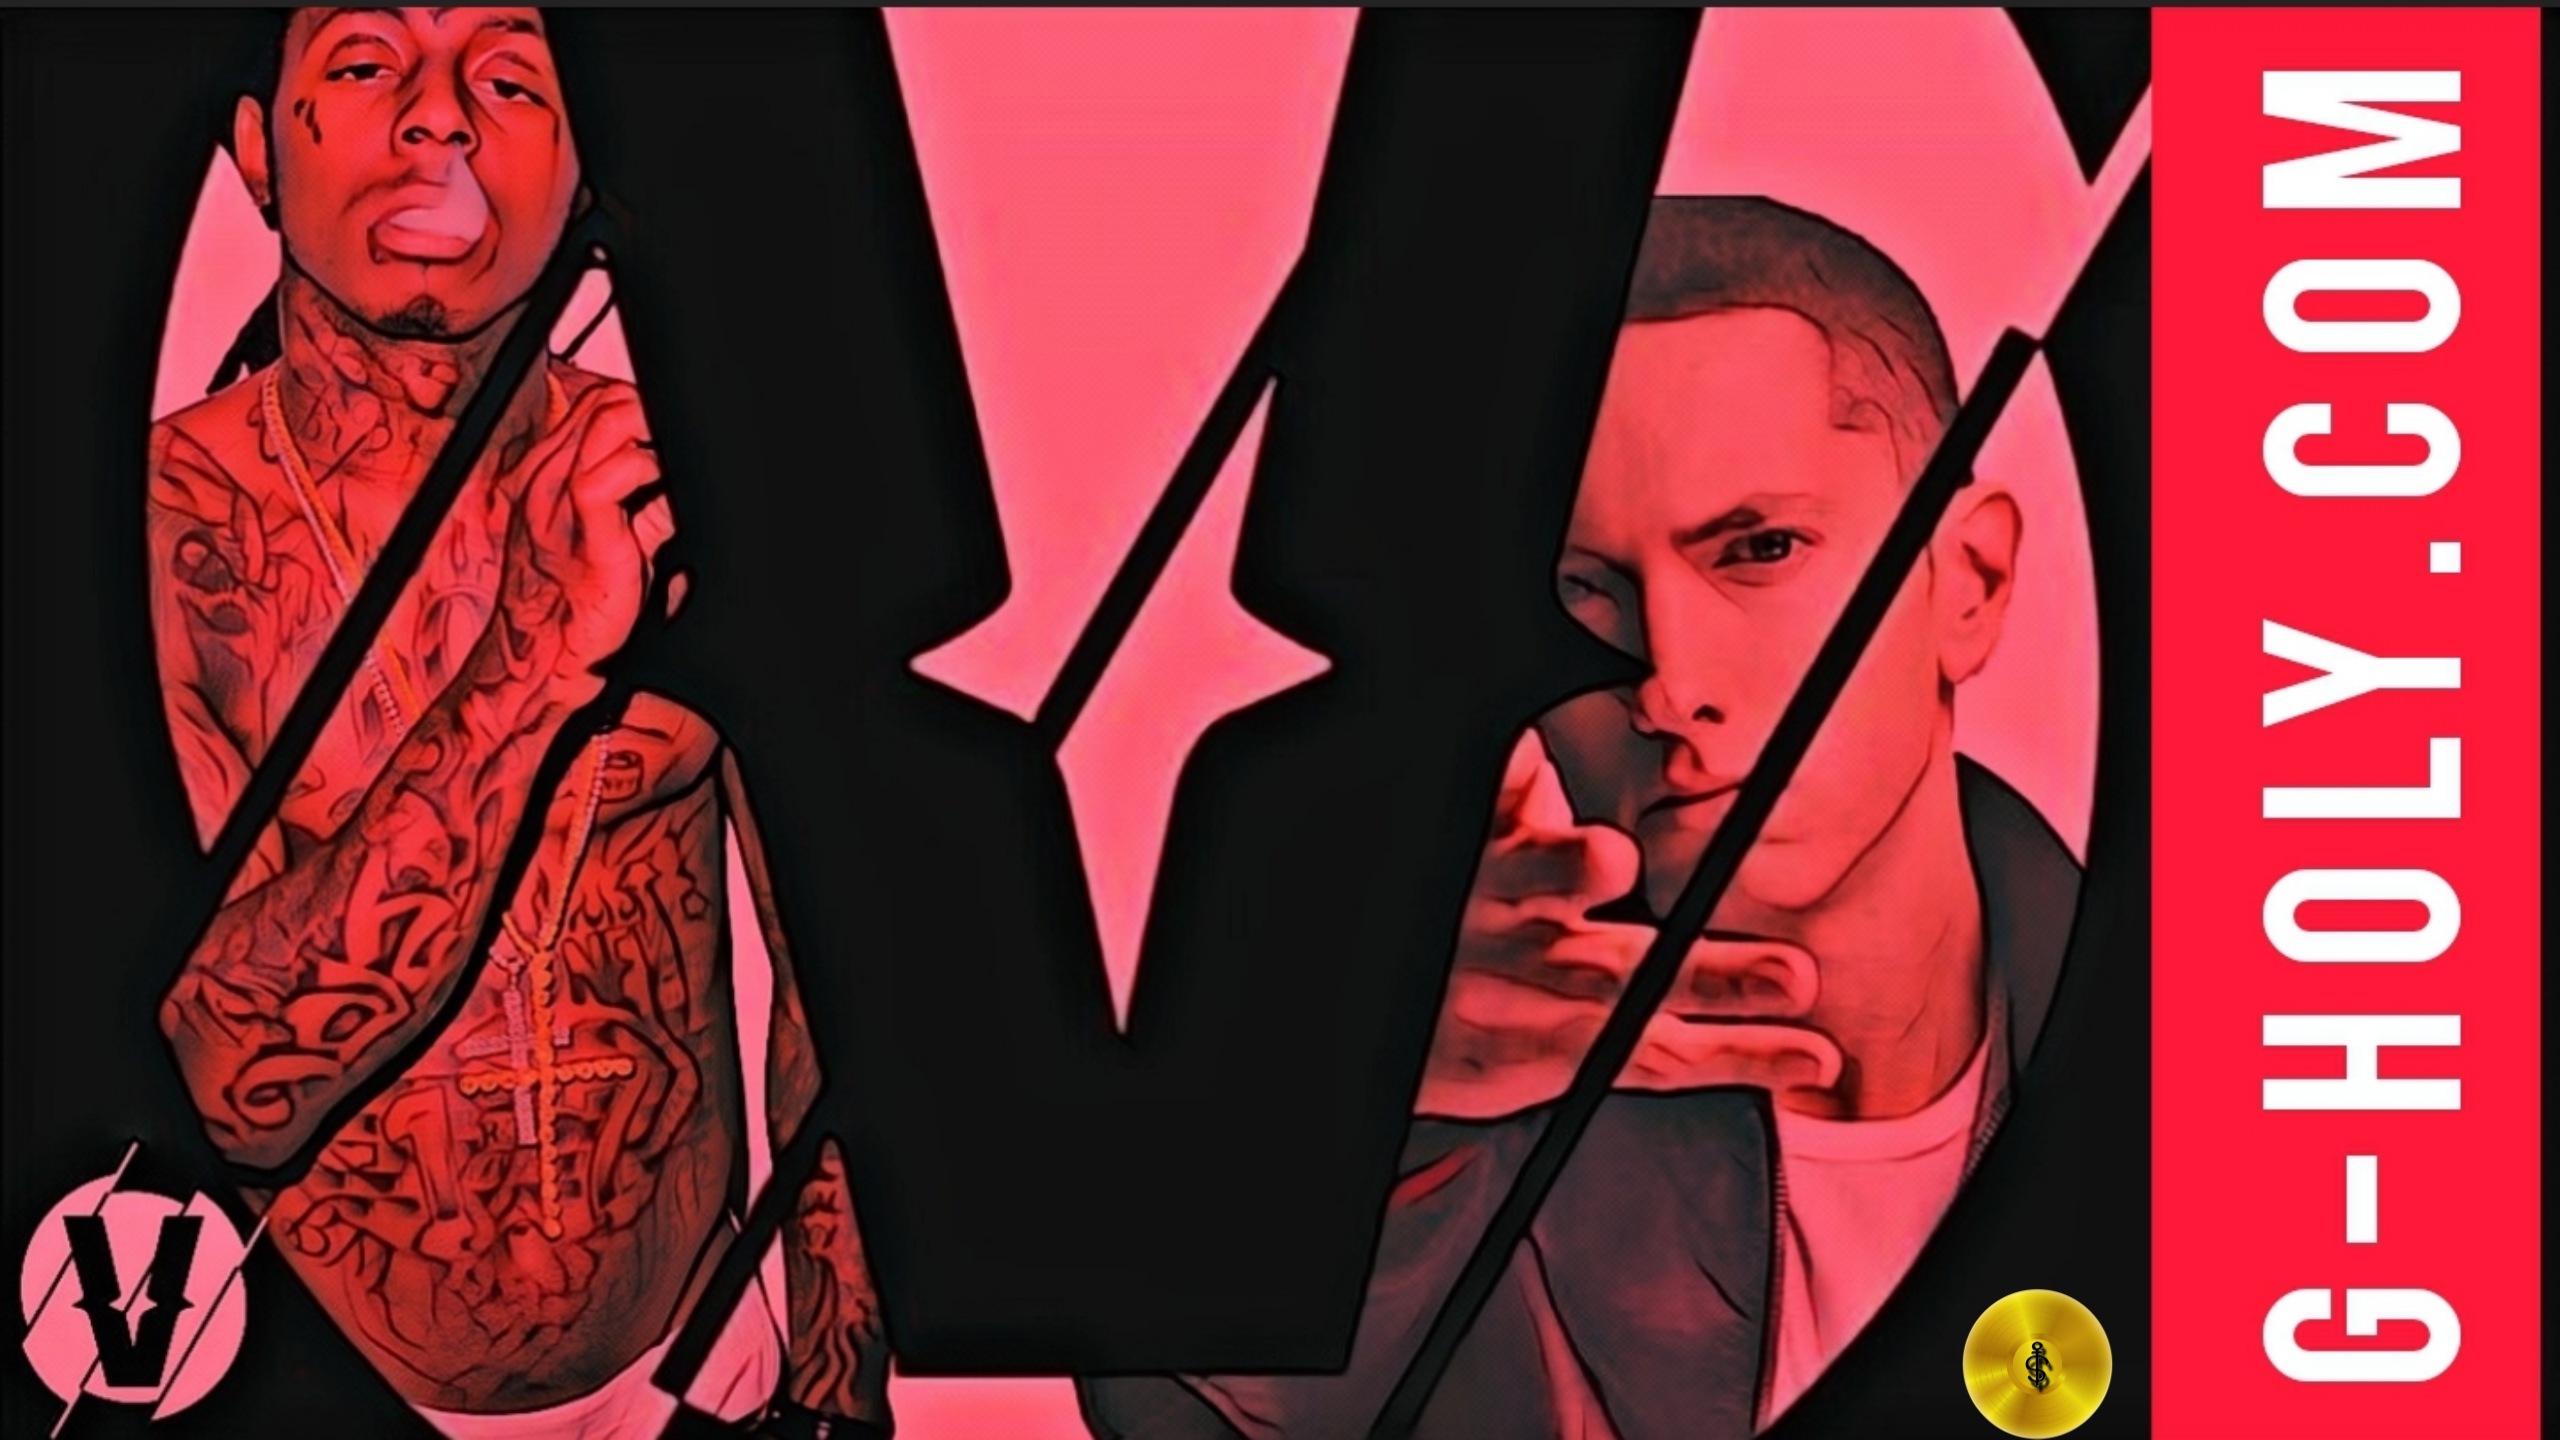 FANTASY VERZUZ: Lil Wayne V Eminem